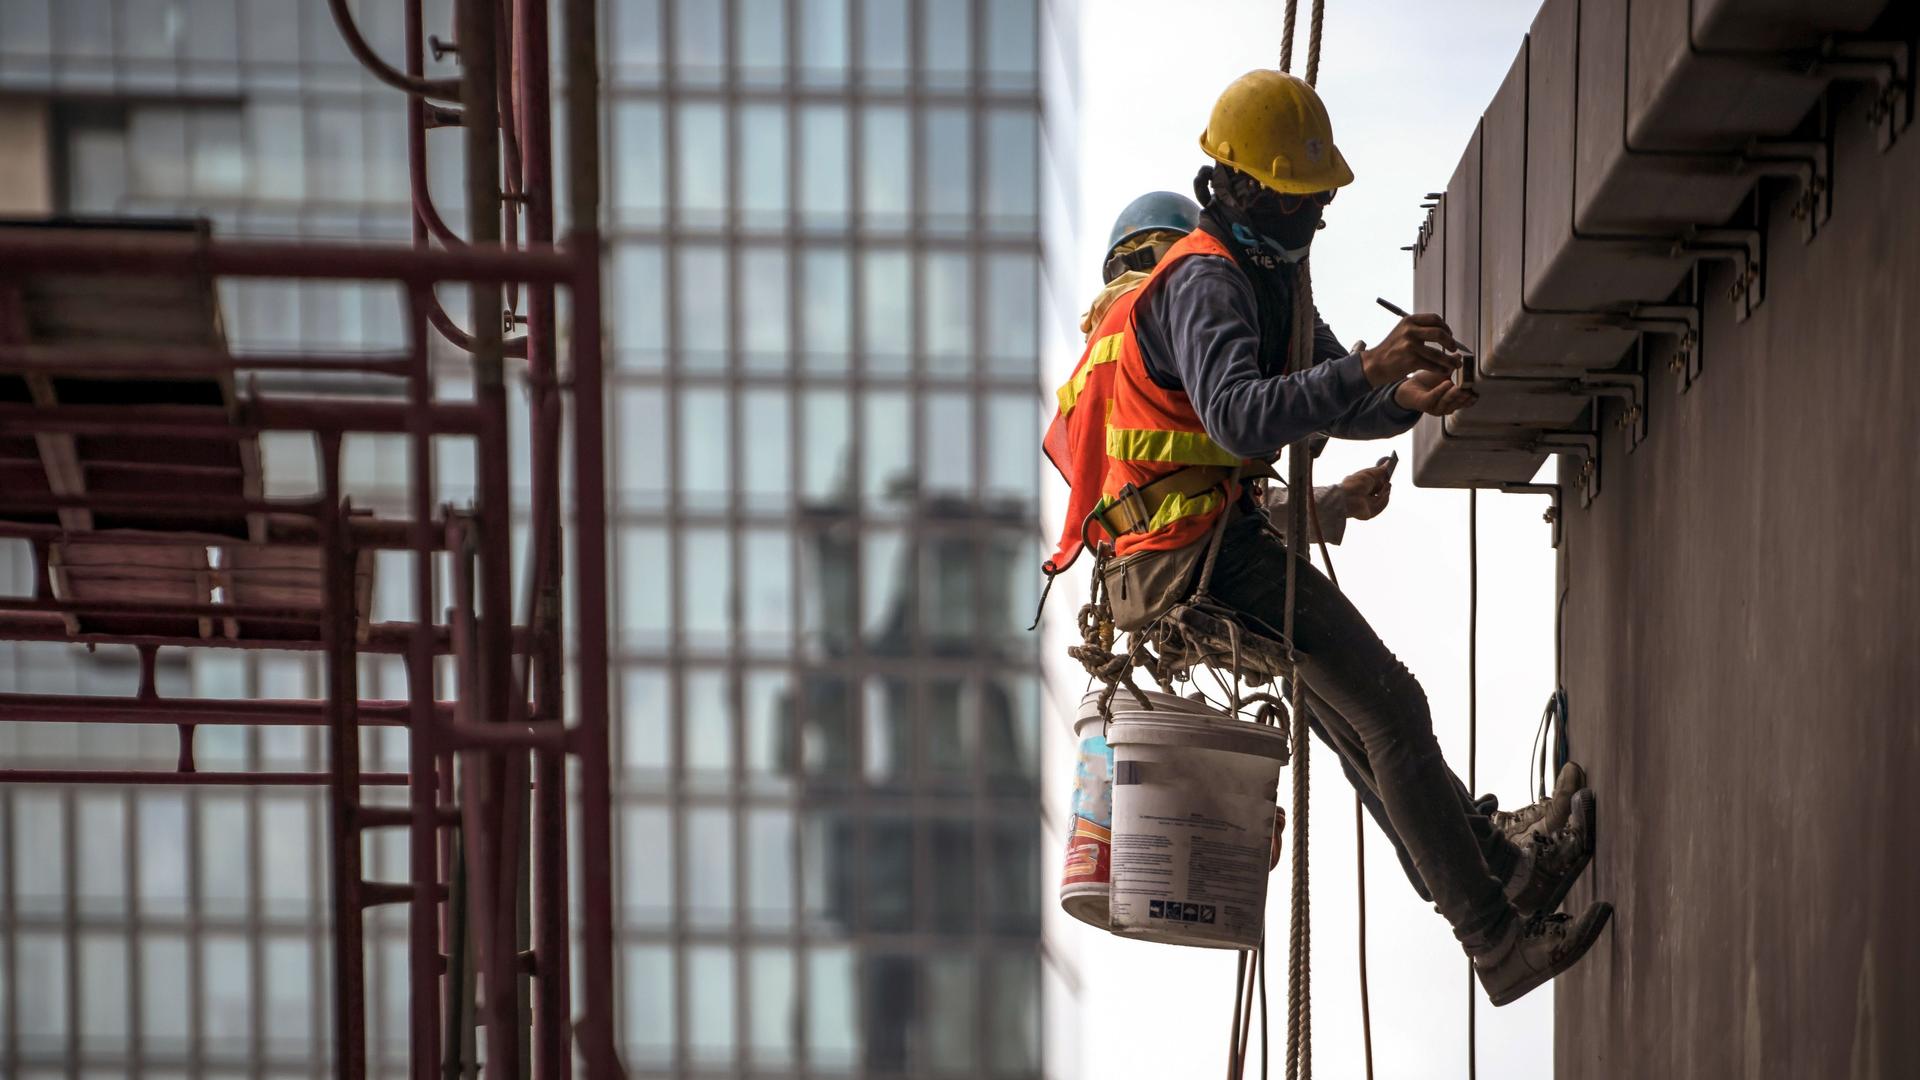 Bauarbeiter in Sicherheitsgurt hängt an Seil an einer Wand und arbeitet.